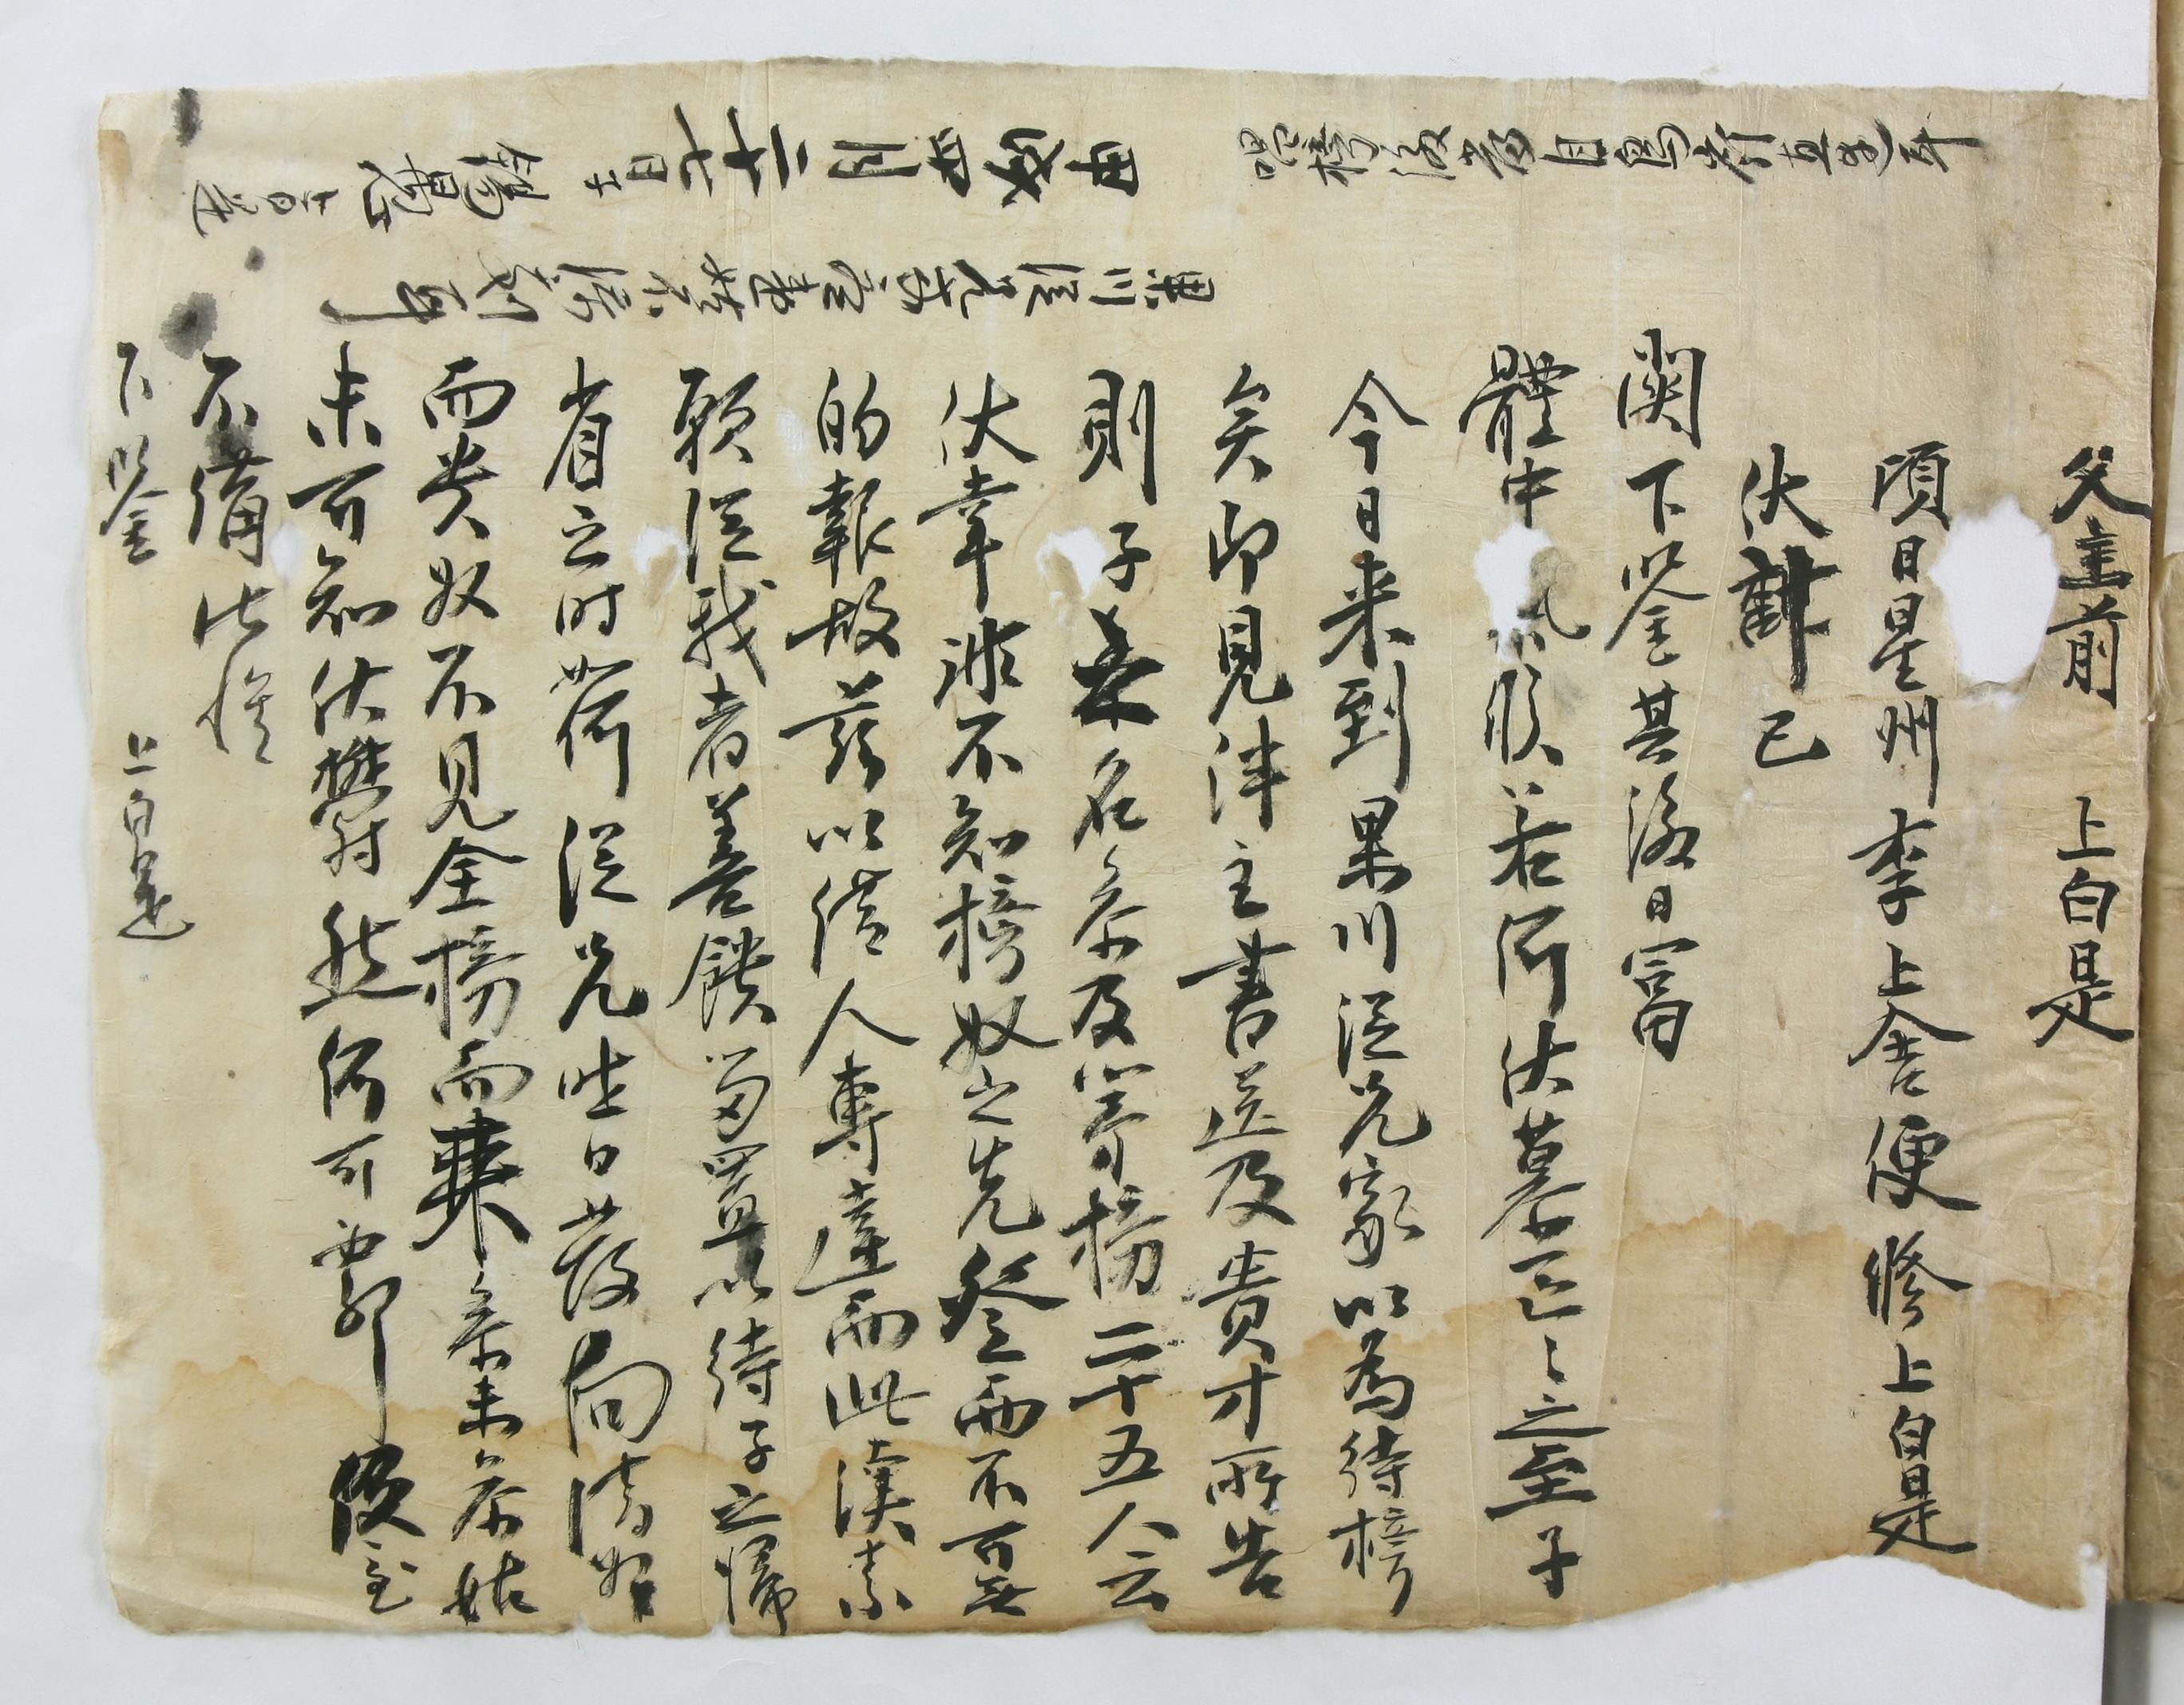 조석우(趙錫愚)가 1754년에 과거 합격소식을 기다리는 부모님께 쓴 편지